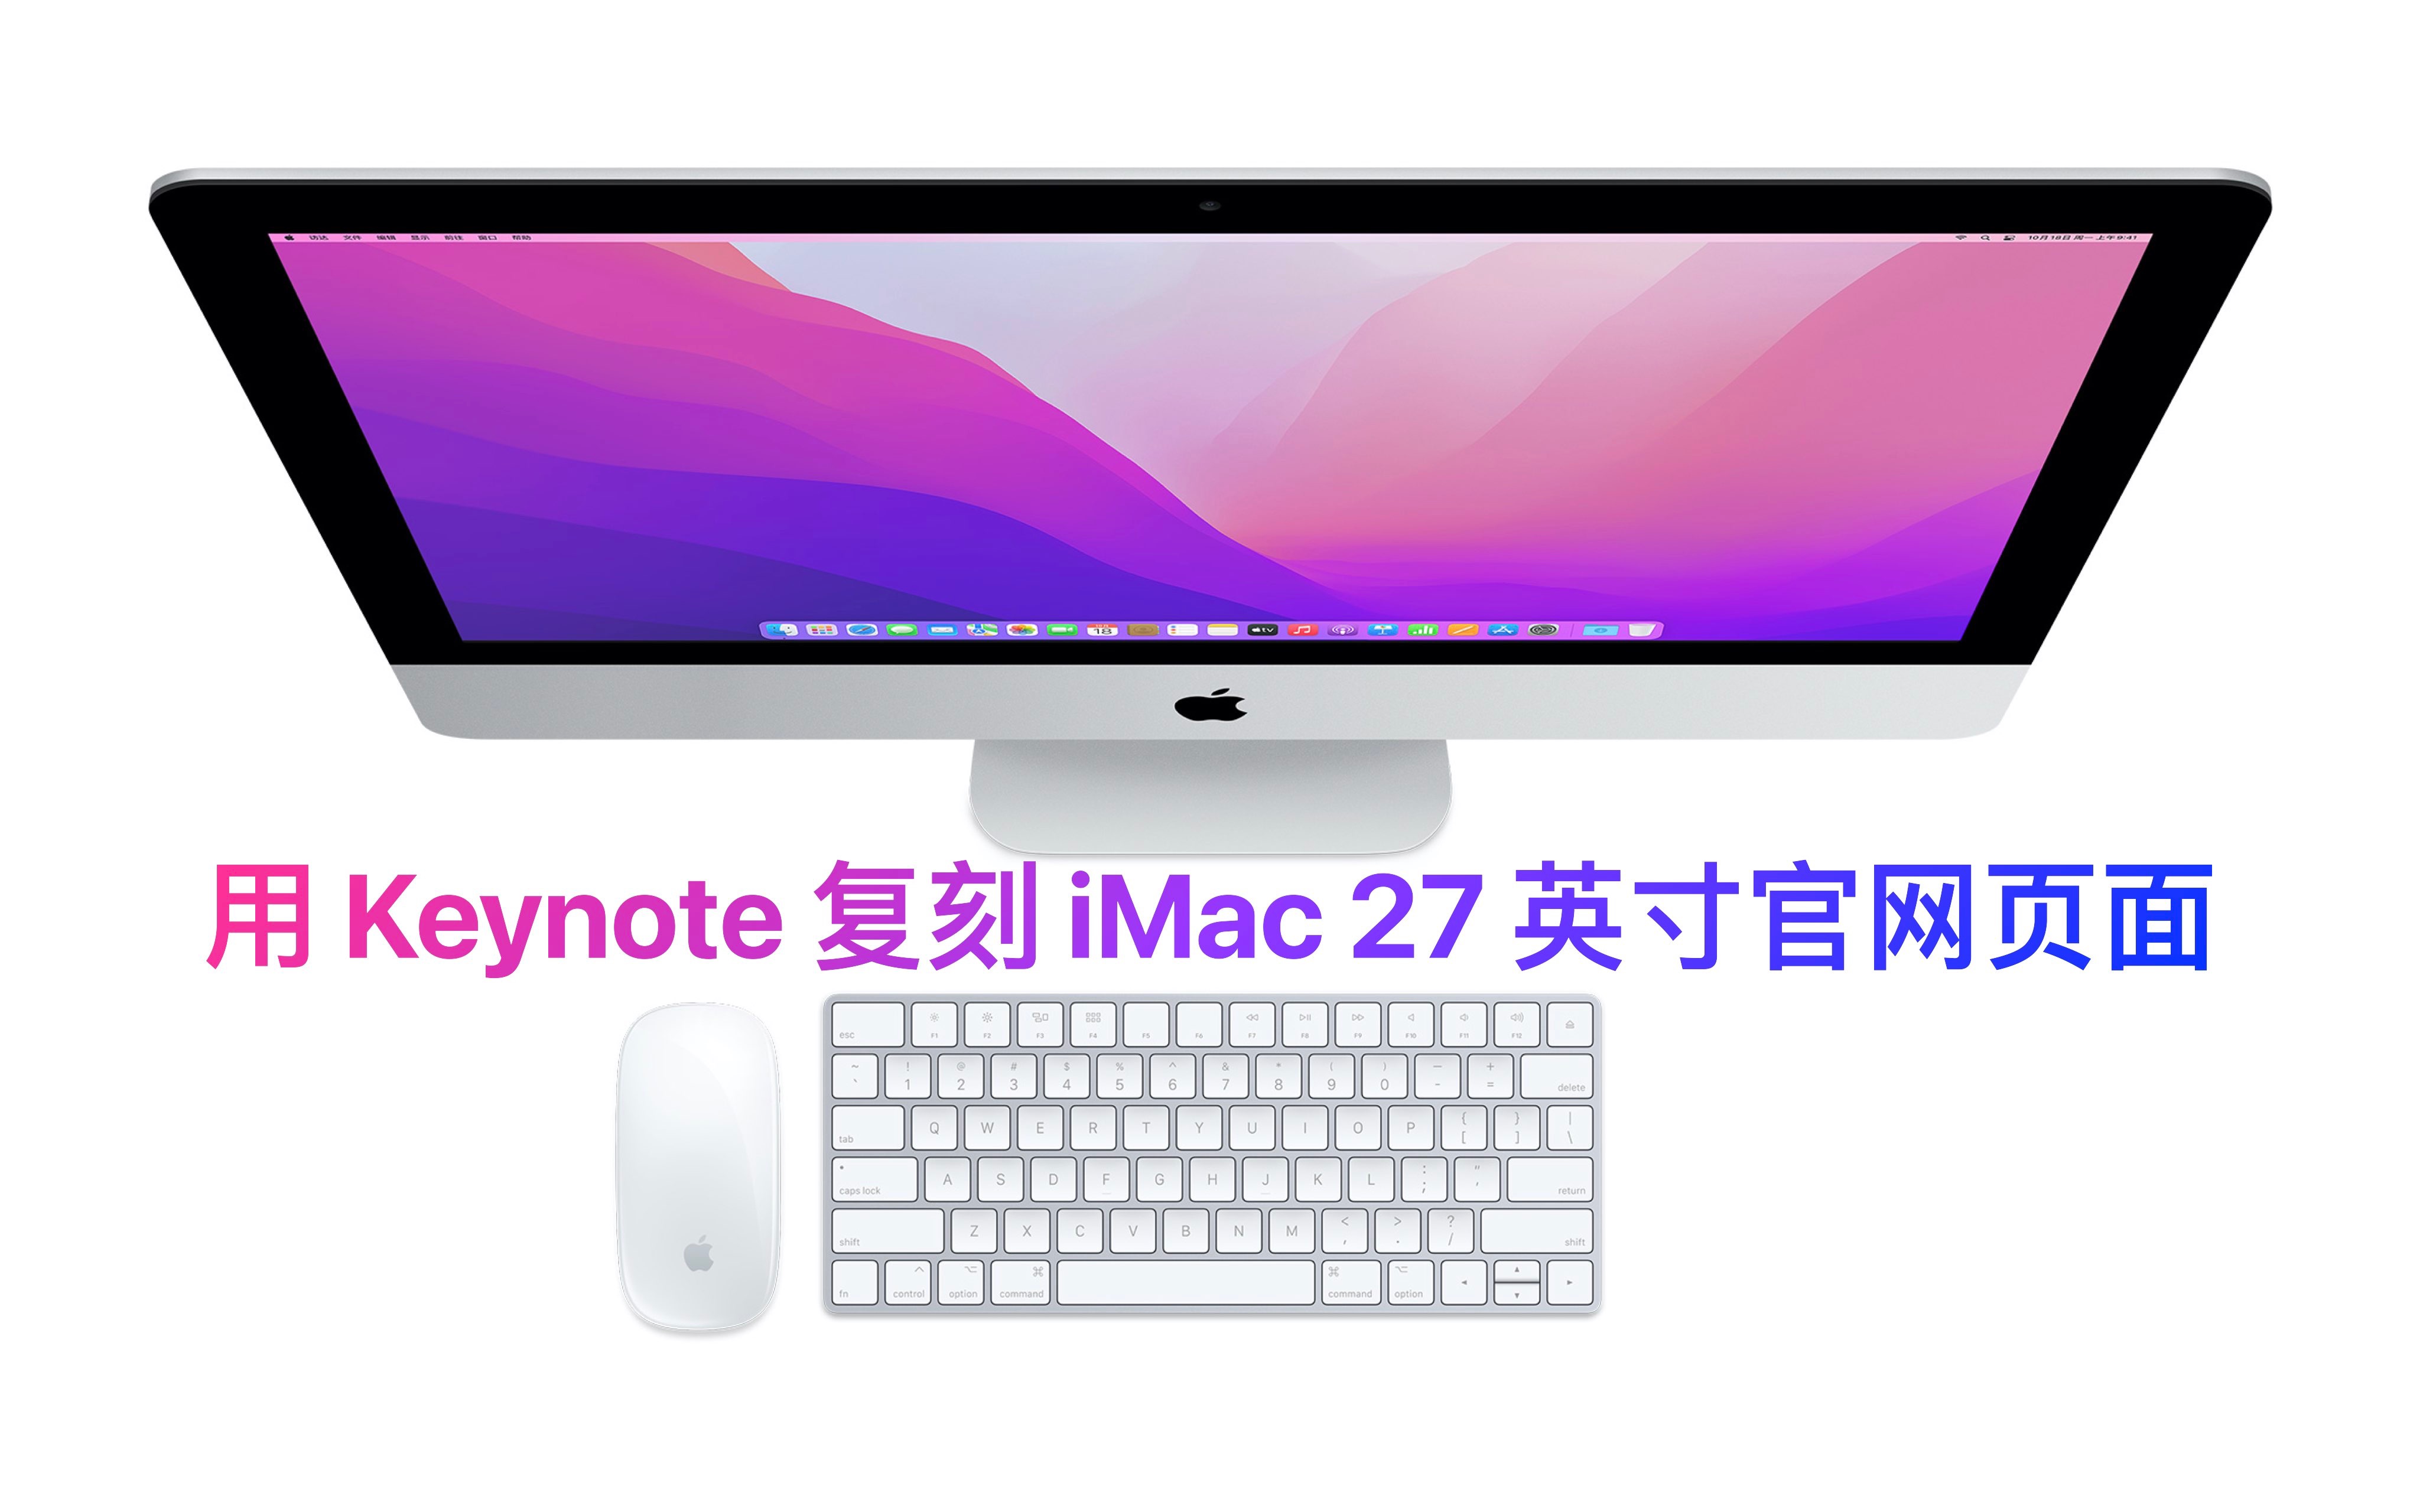 用 Keynote 复刻 iMac 27 英寸官网页面